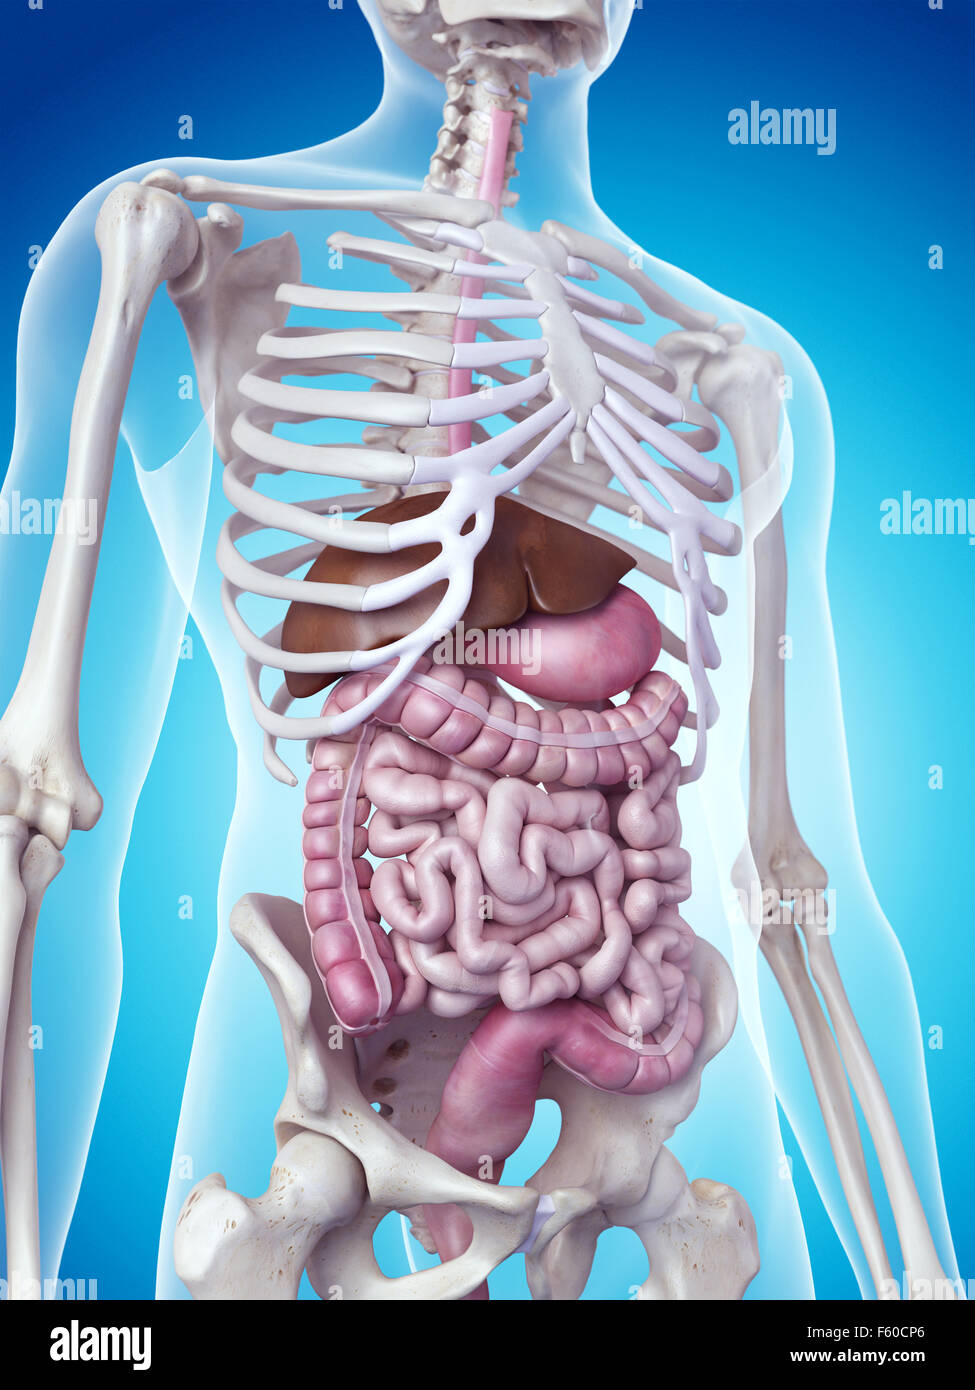 Dal punto di vista medico illustrazione accurata del sistema digestivo Foto Stock